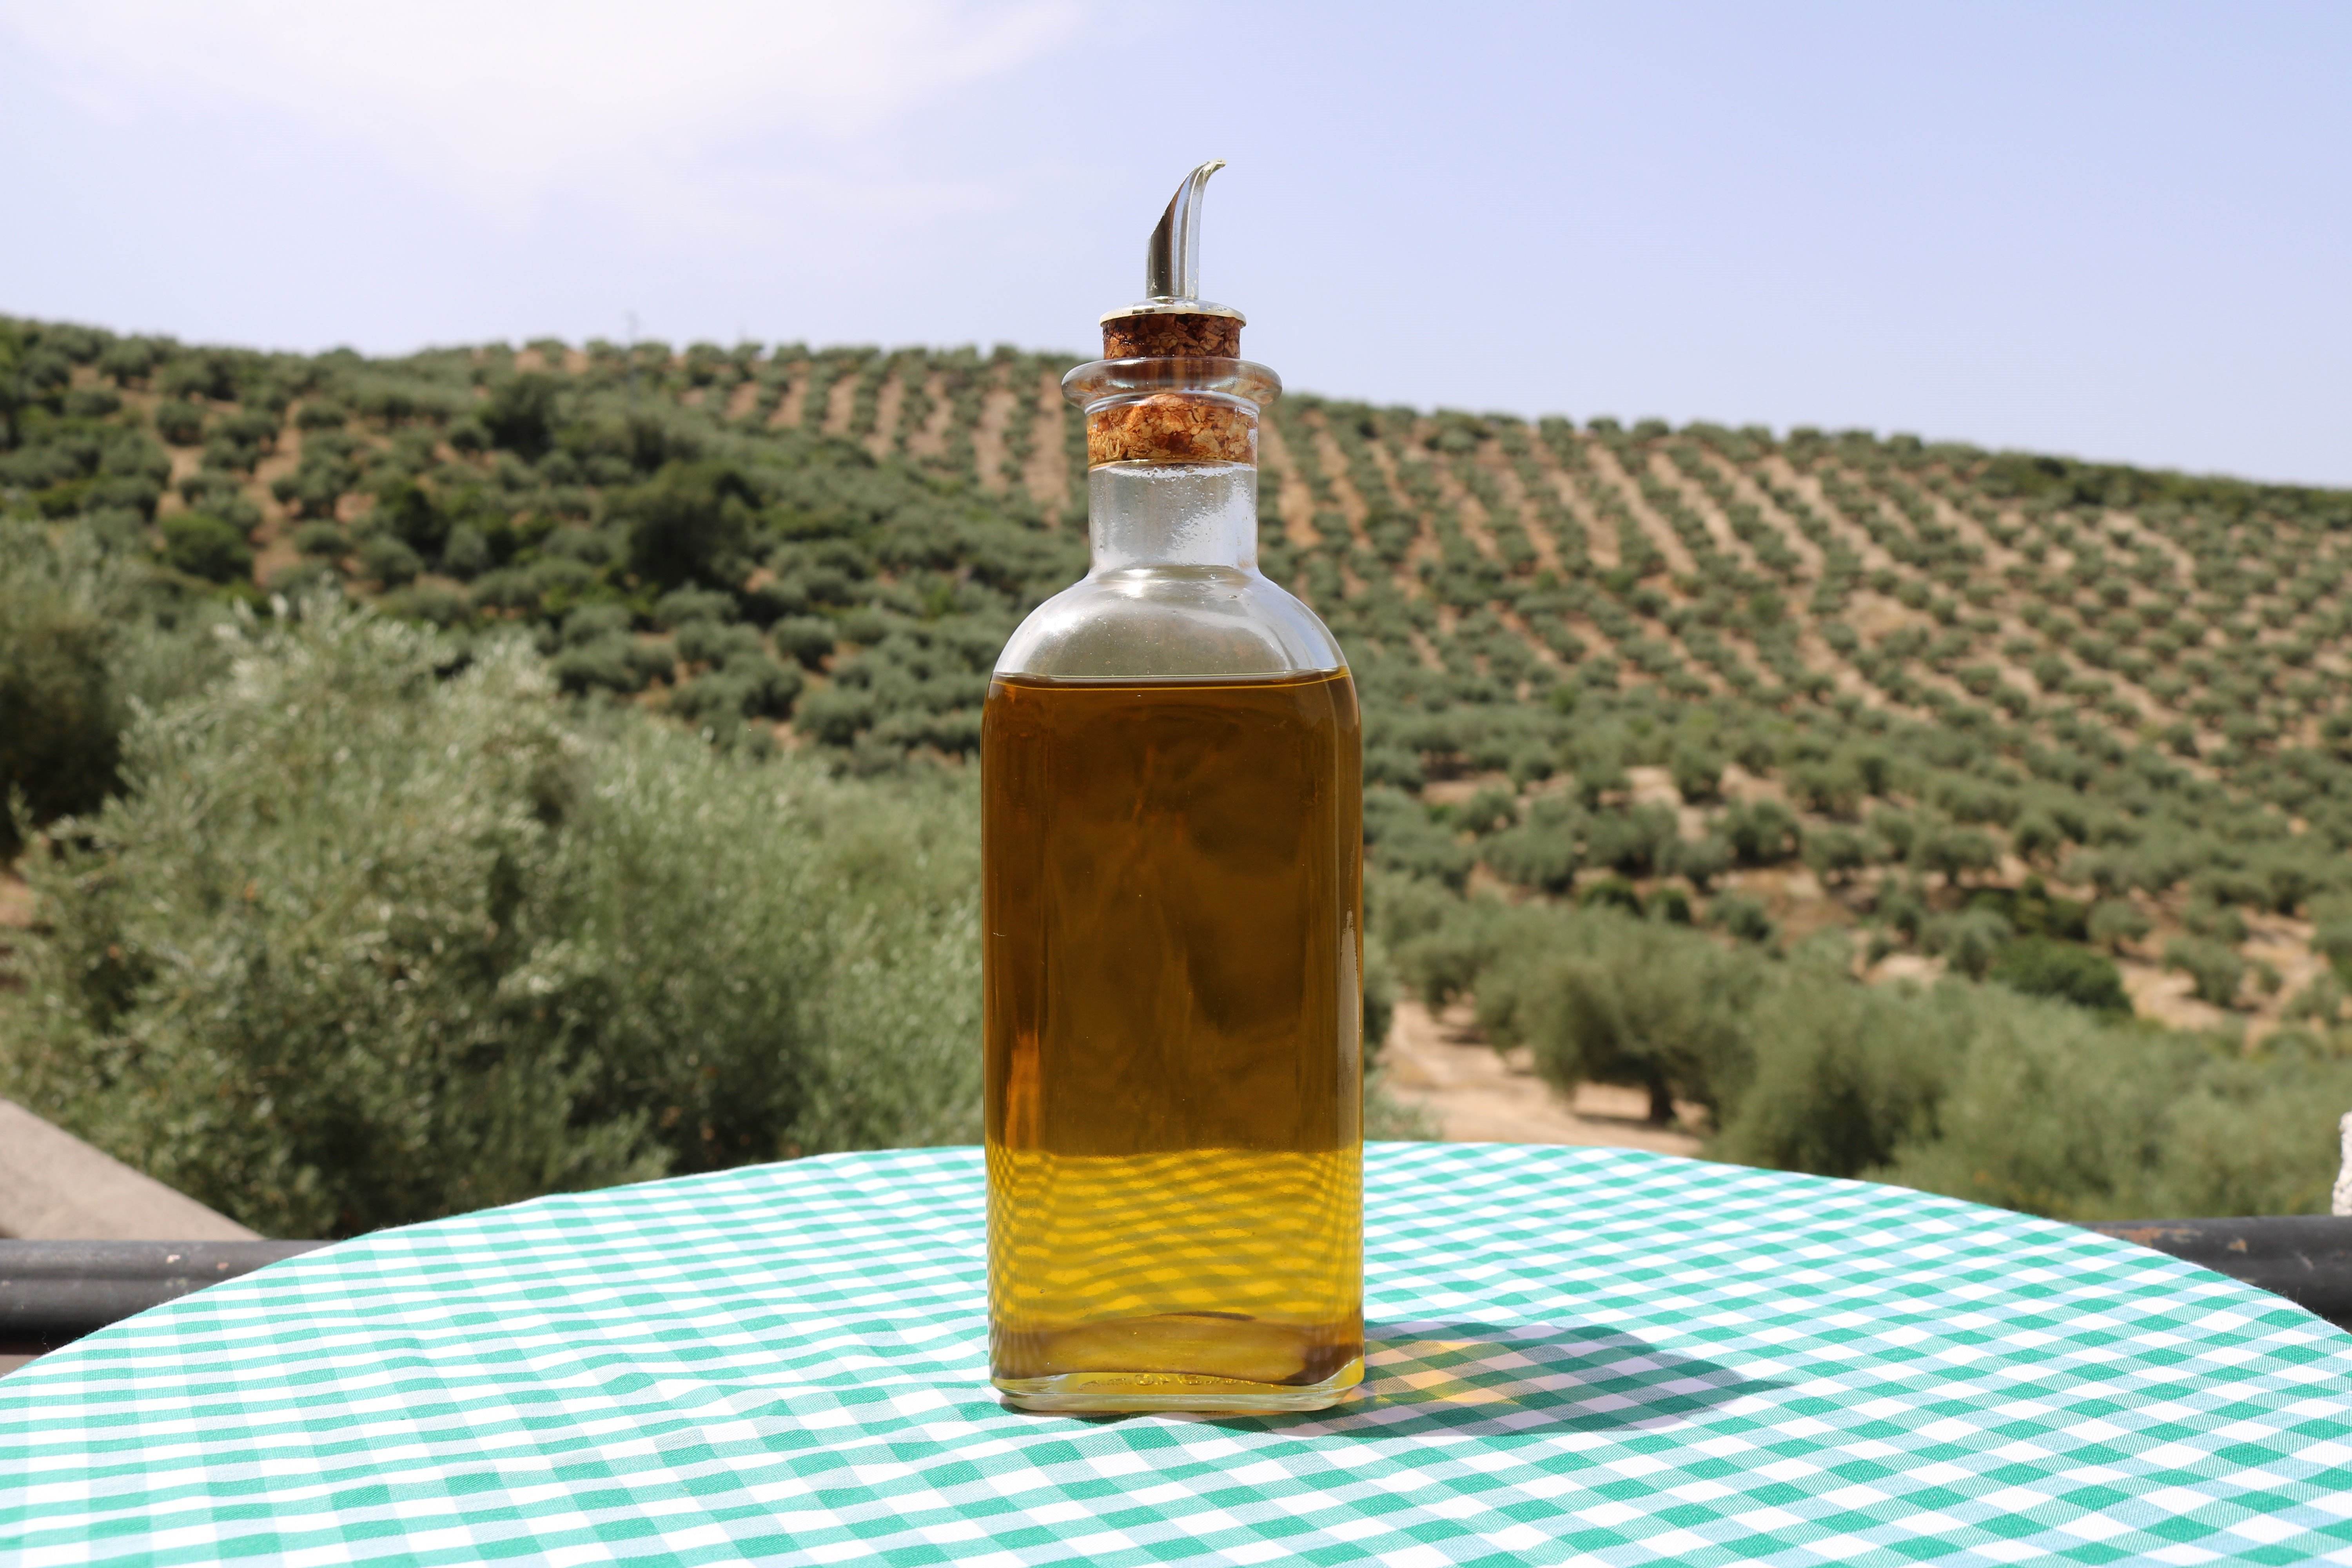 Què està passant amb l'oli d'oliva? El seu preu assoleix màxims històrics: 9 euros el litre